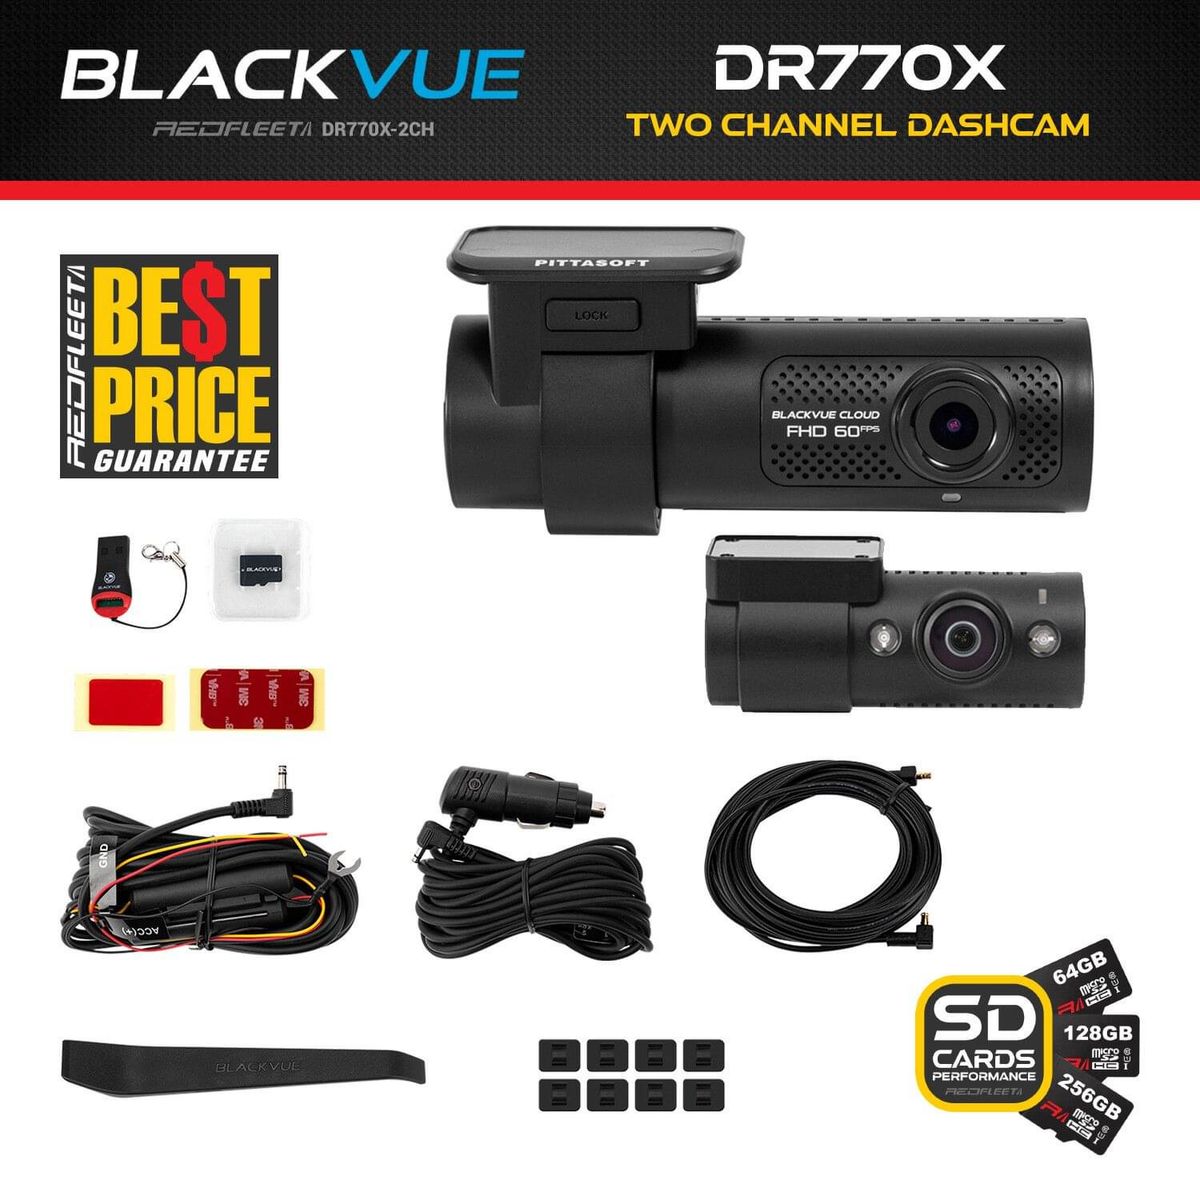 BlackVue FHD 1080P GPS WiFi Dash Cam - DR770X2CH